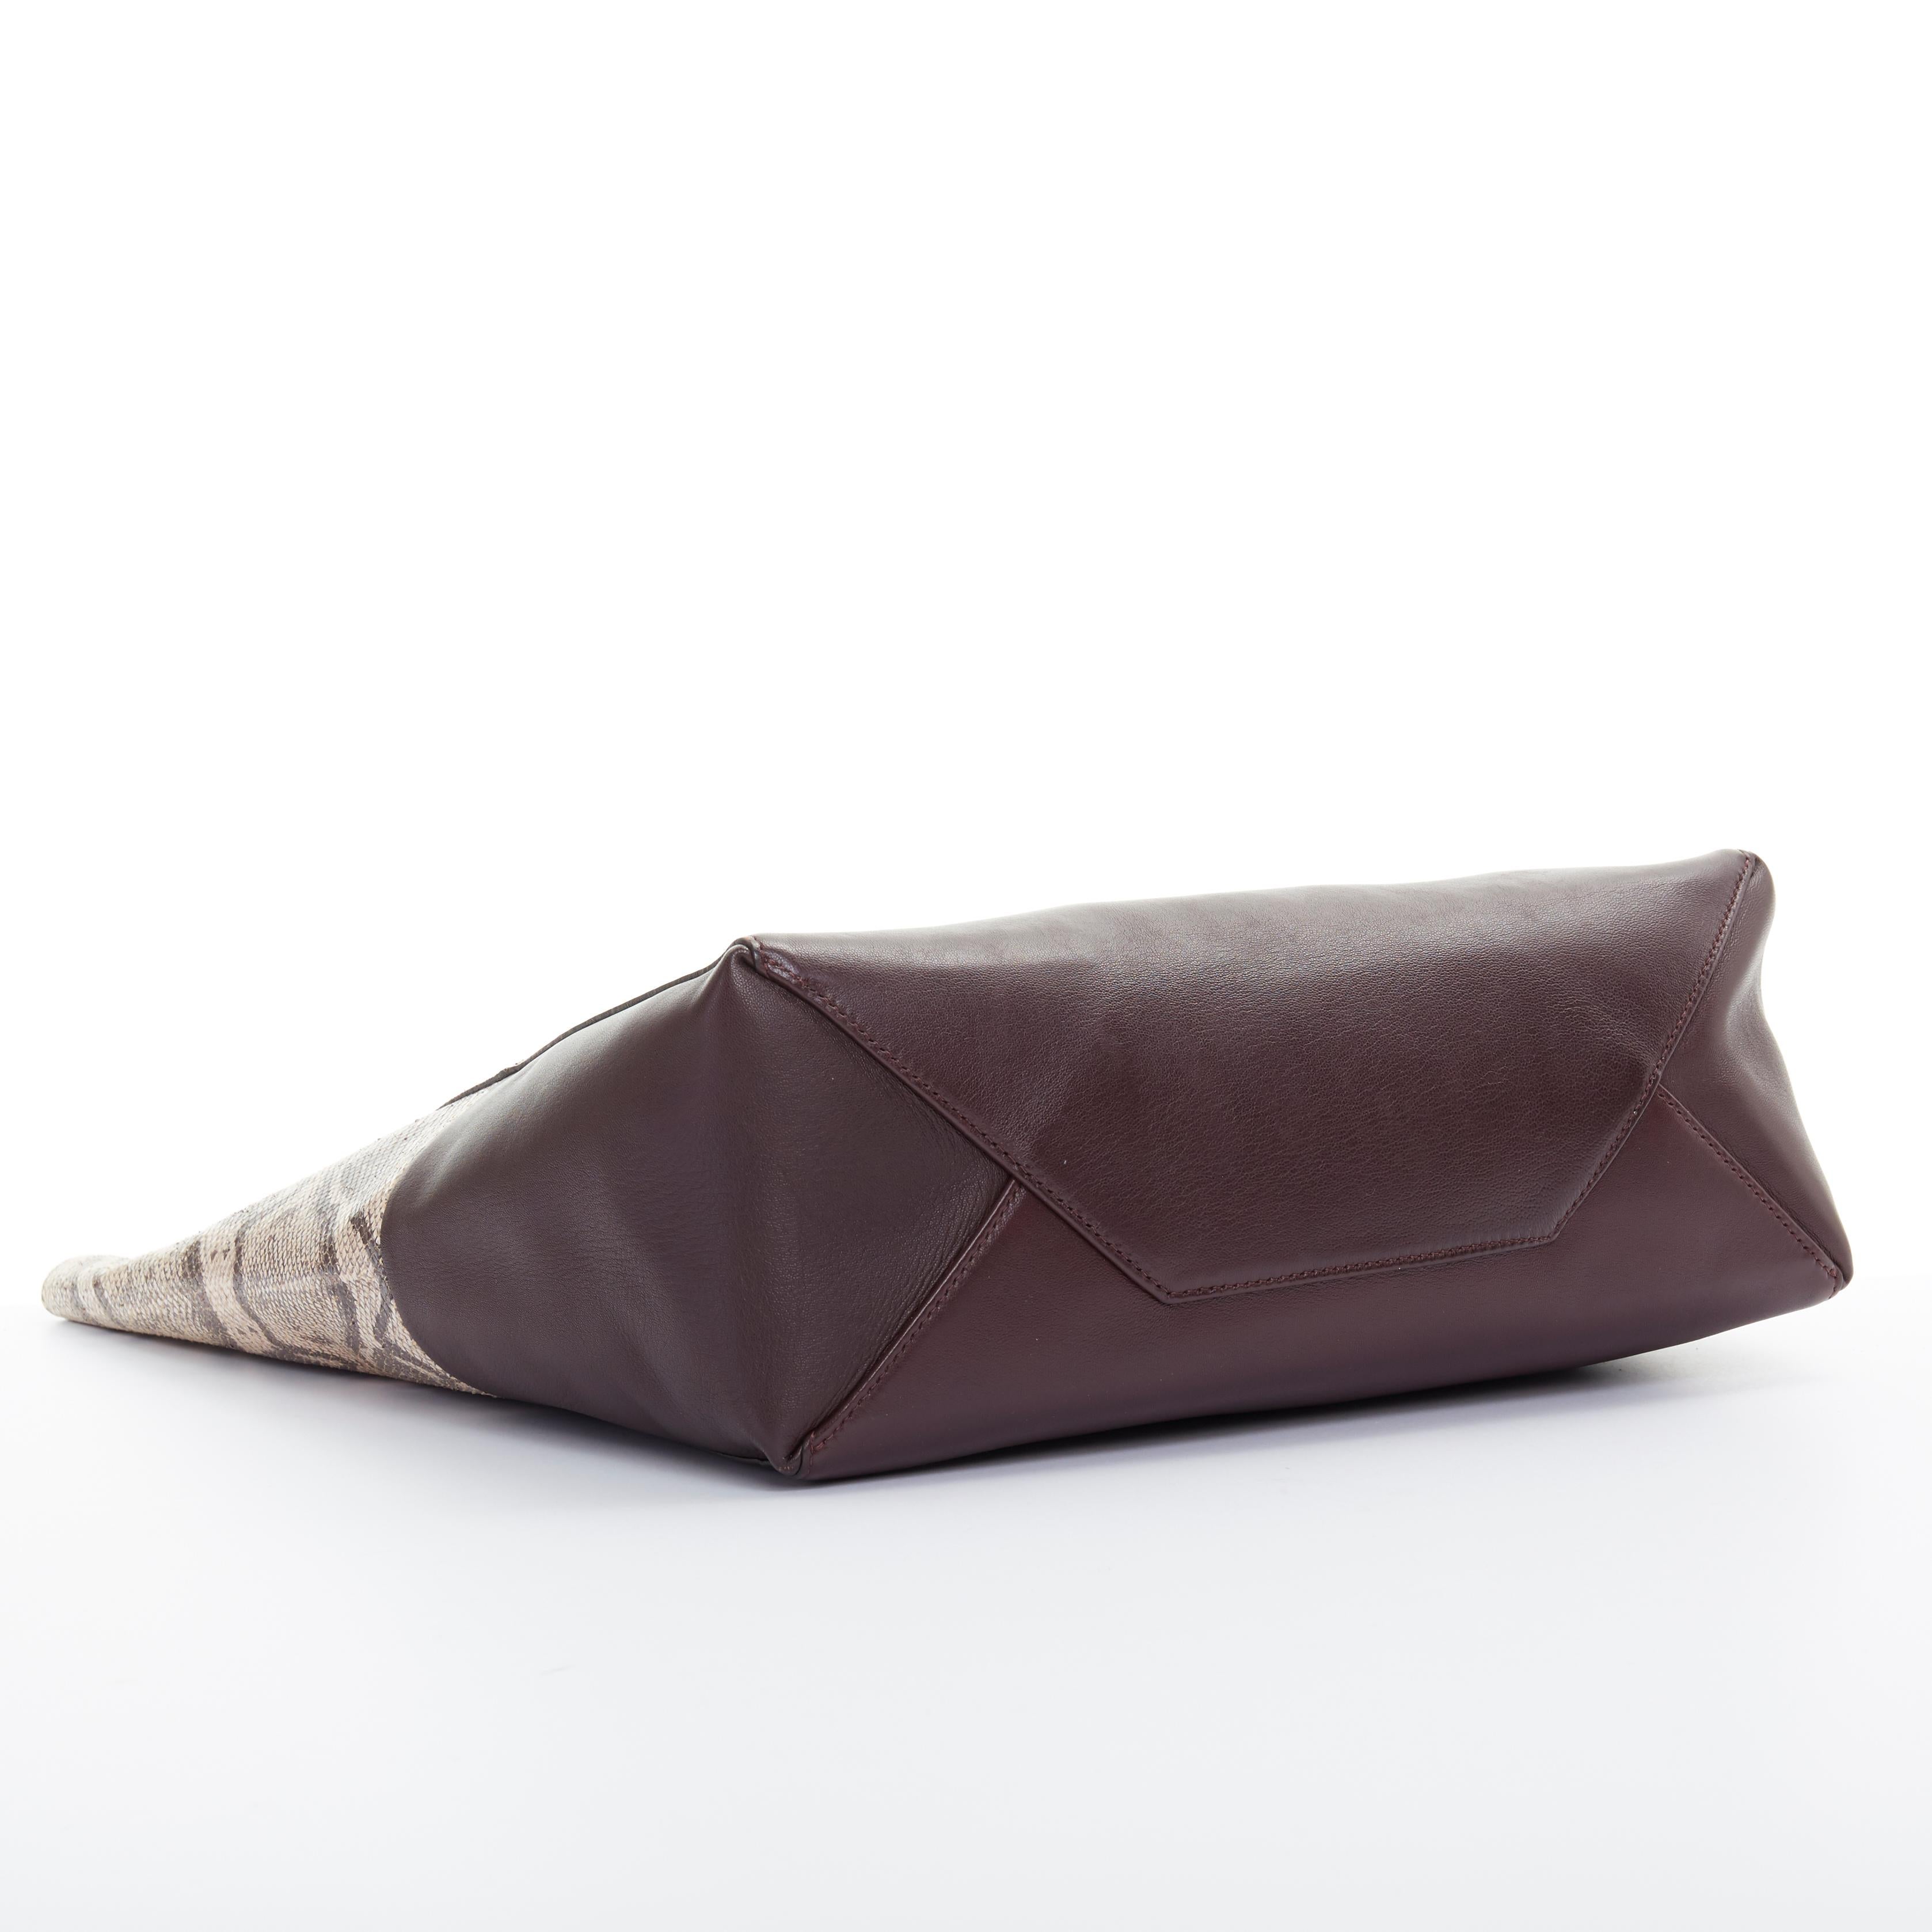 OLD CELINE brown python burgundy leather bi-colour vertical cabas tote bag 2